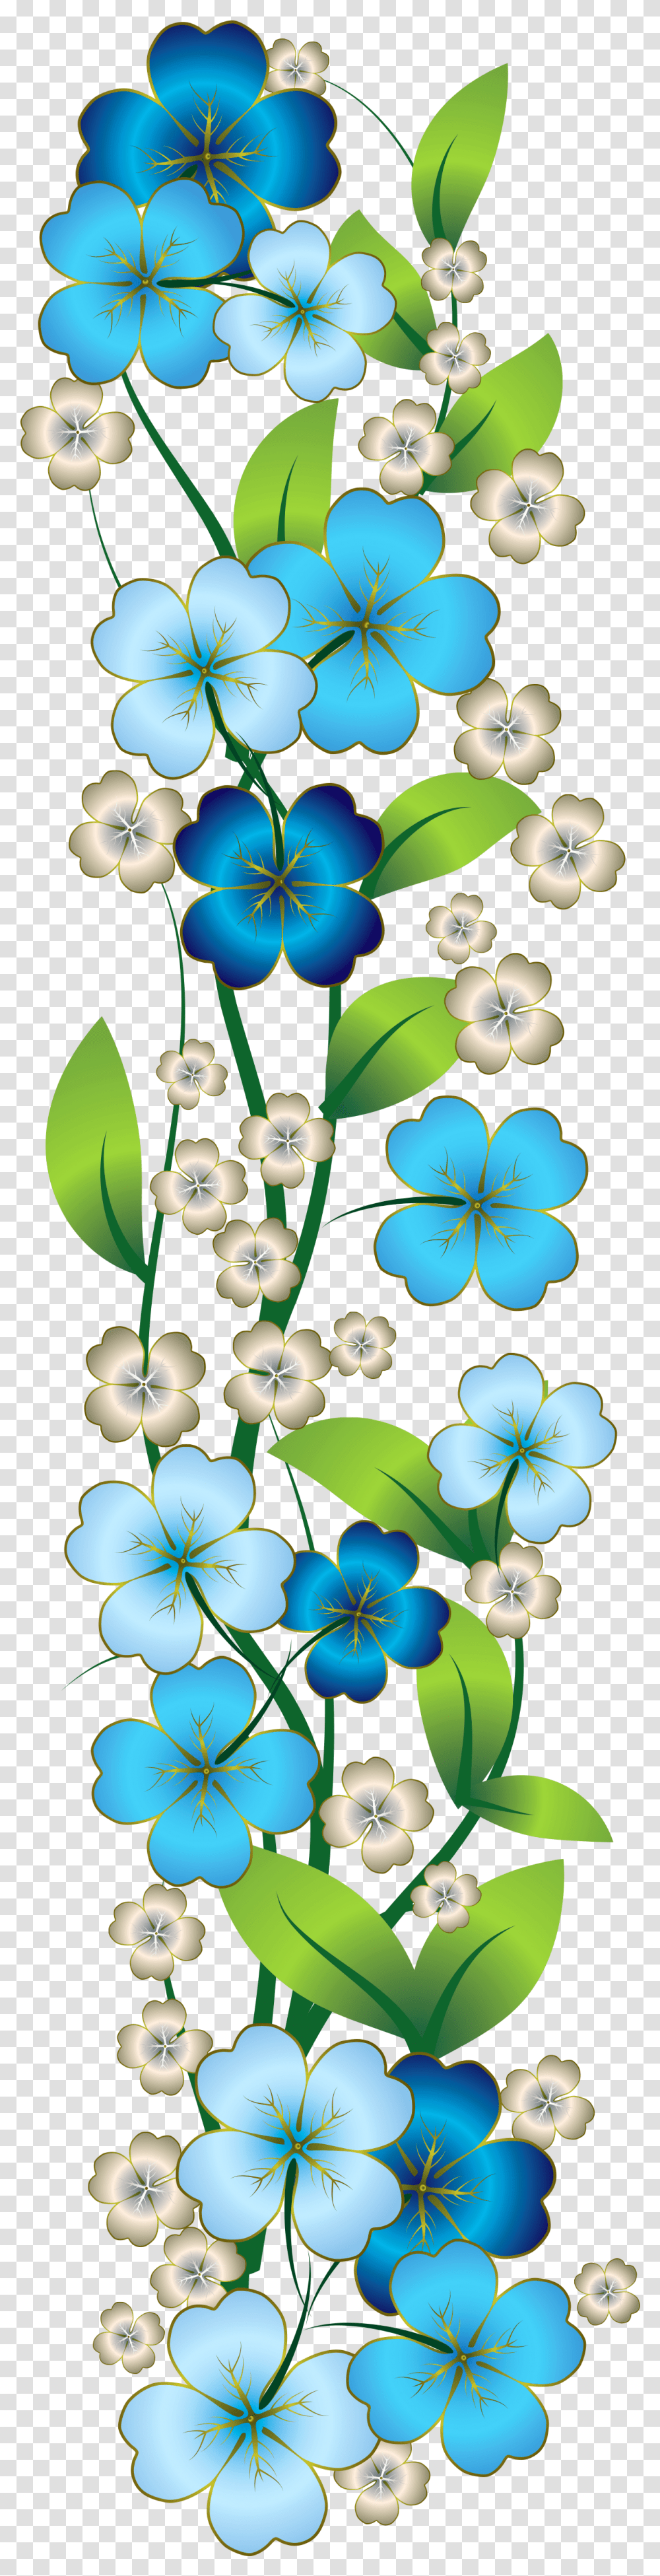 Flutes Clipart Bansi Blue Flower Border, Plant, Blossom, Petal Transparent Png